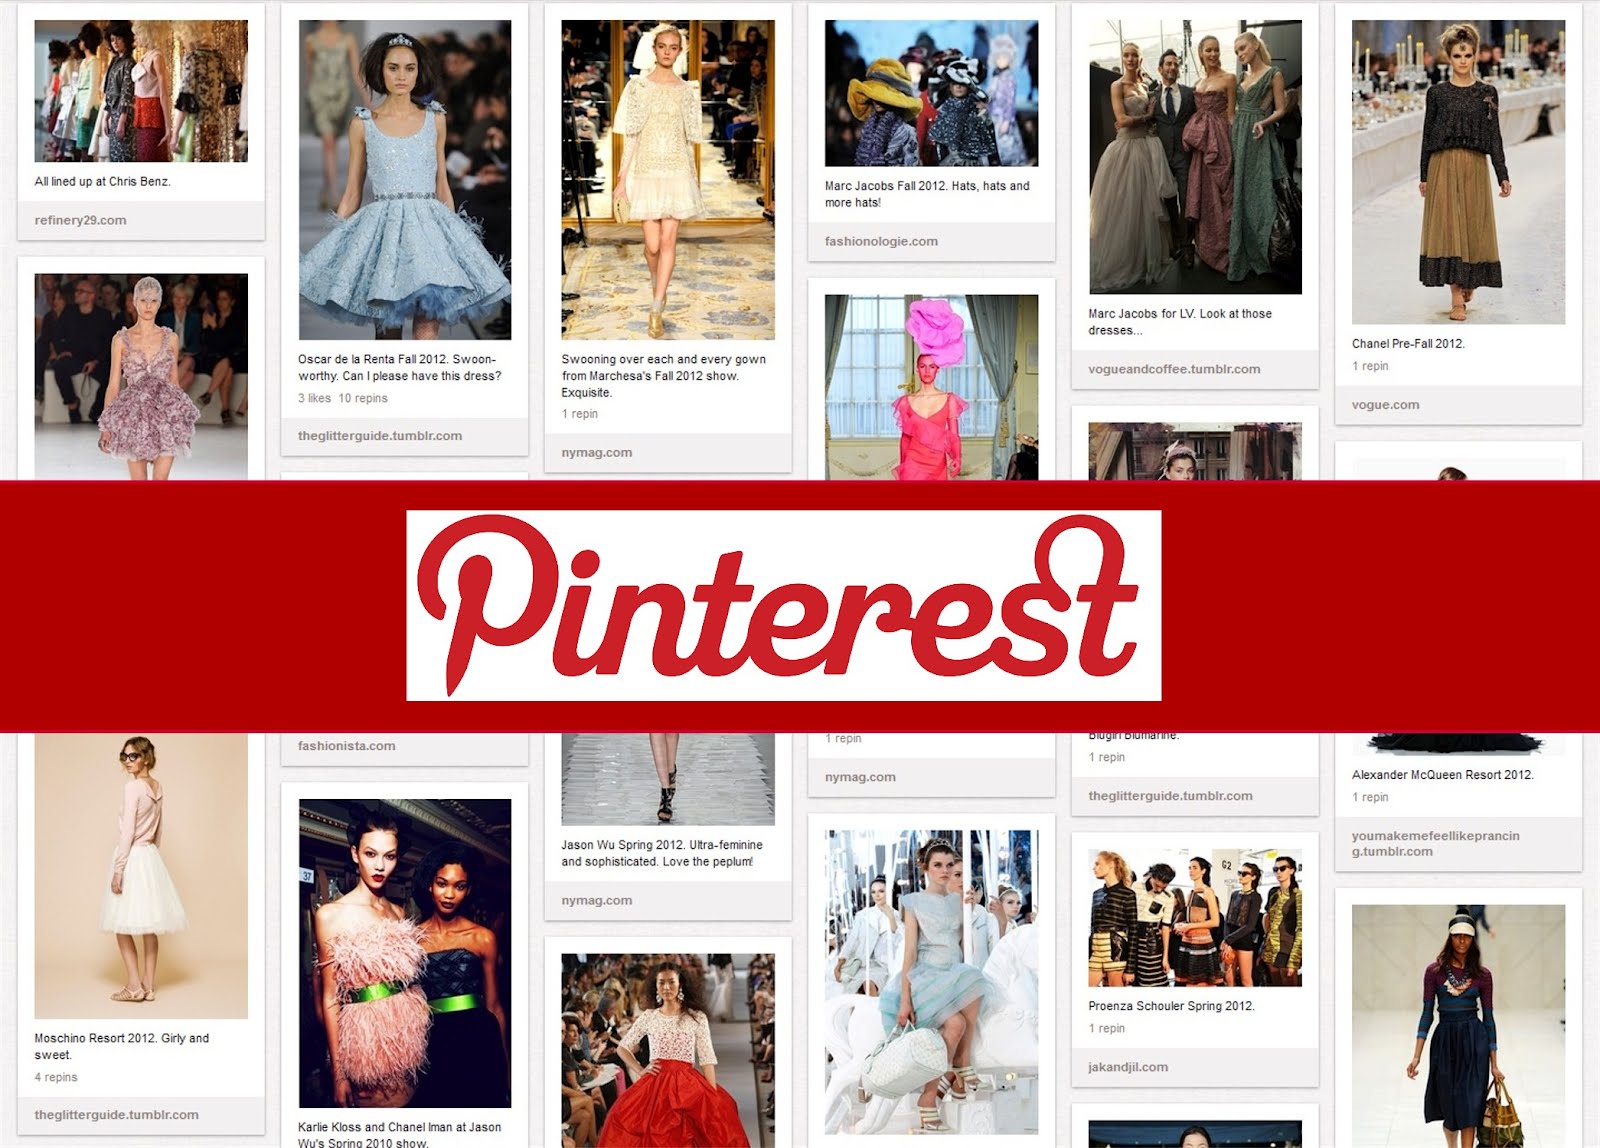 The Pinterest Revolution